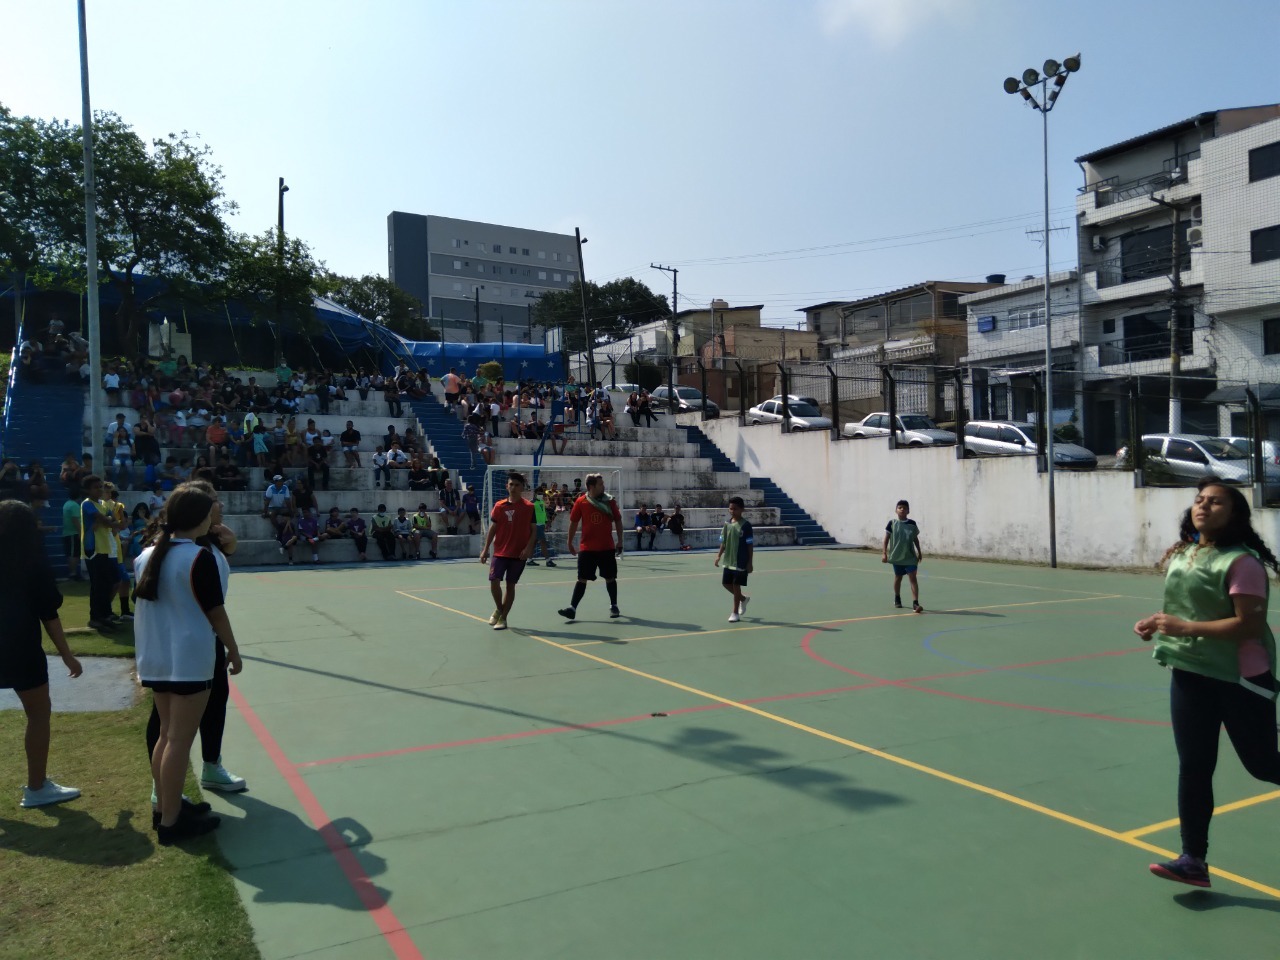 Em um dia ensolarado, crianças e adolescentes jogam futsal na quadra do Circo Social da Vila Ré, ao fundo, na arquibancada, os familiares torcem pelos jogadores.